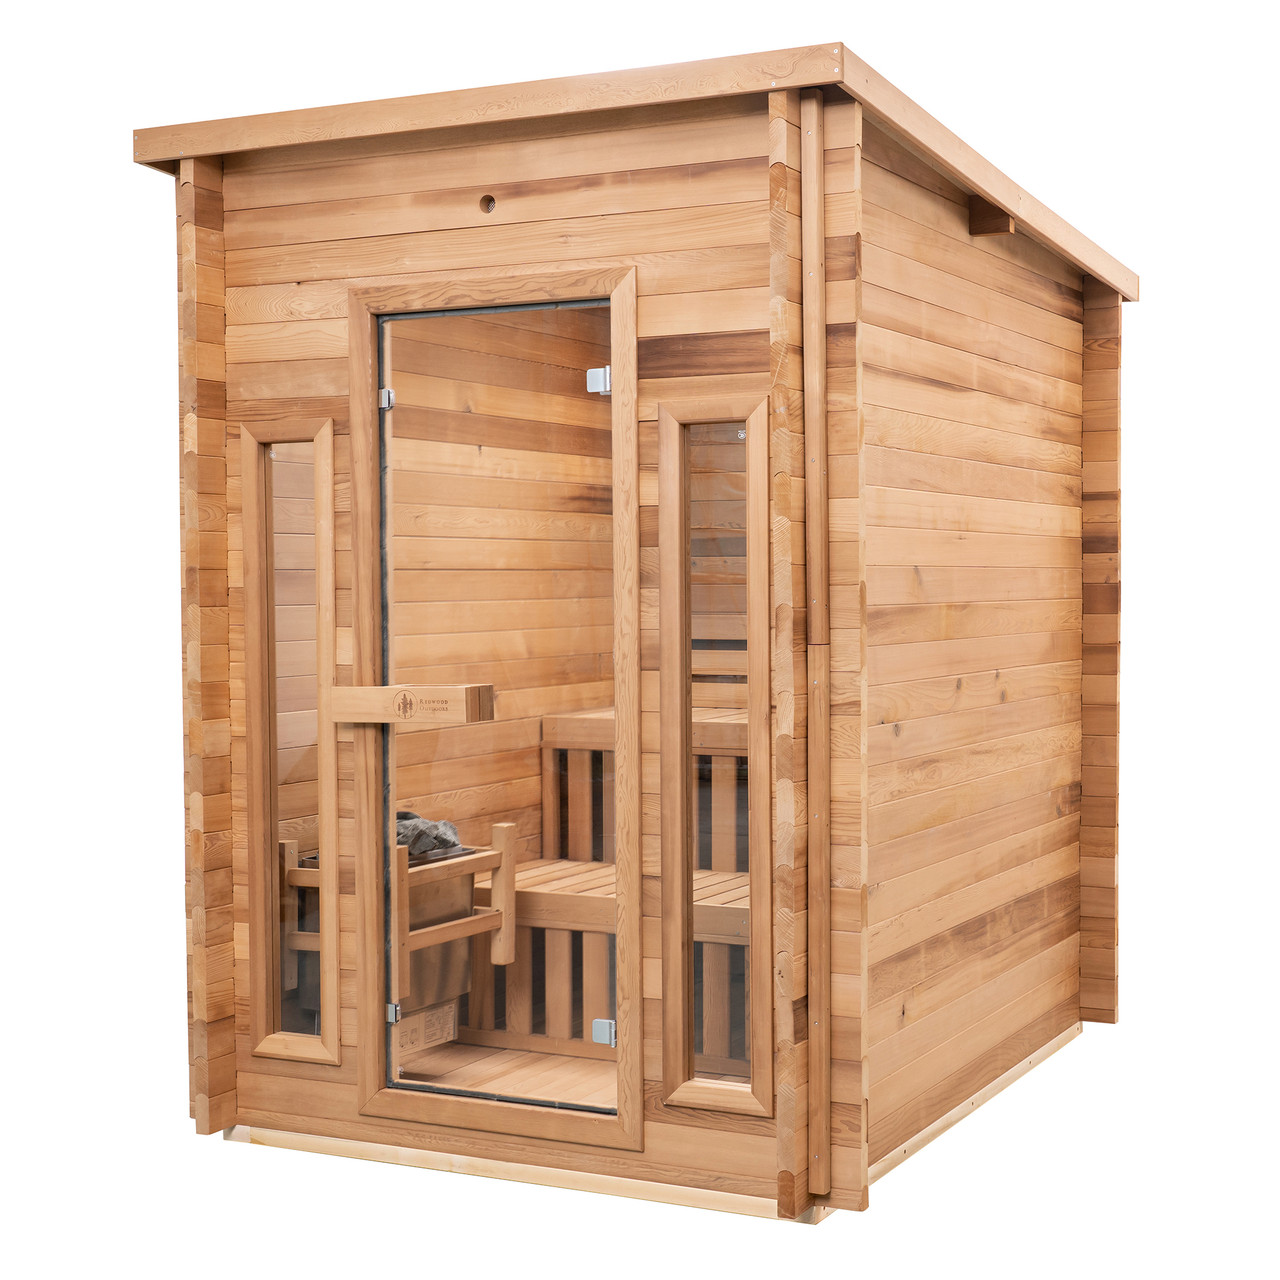 Cabin Outdoor Sauna - 4 Person